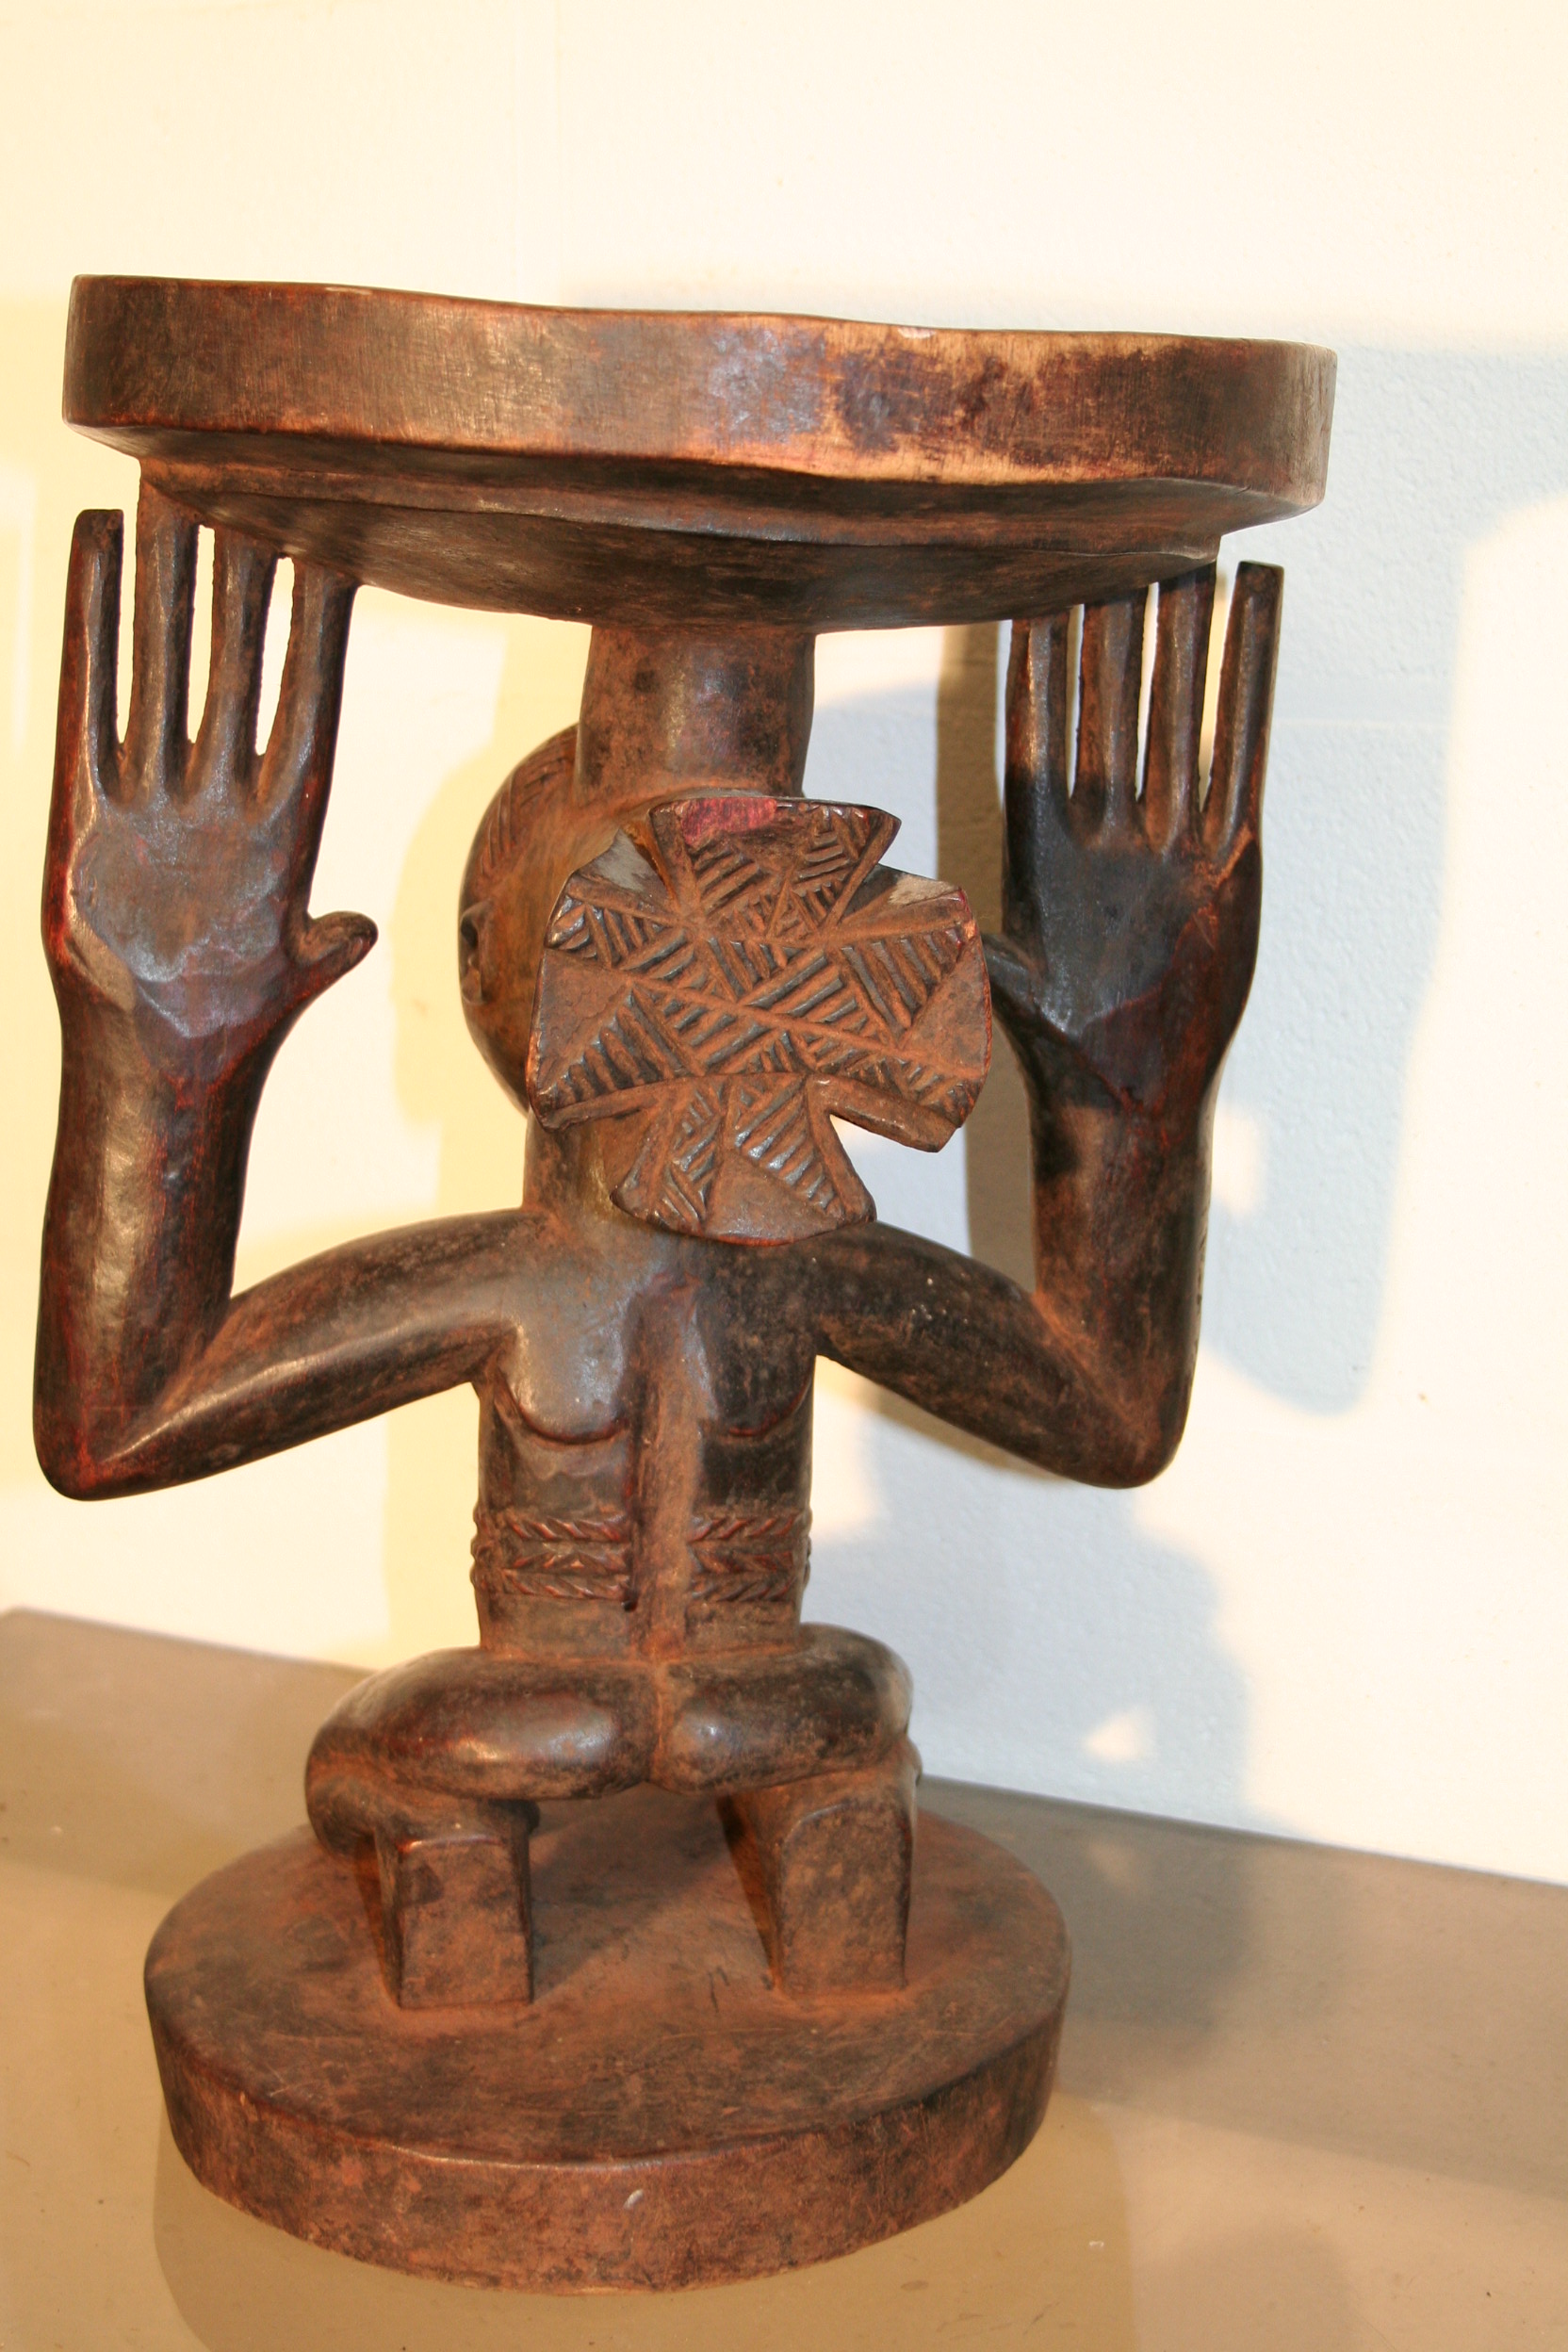 Luba(cariatide), d`afrique : R.d.du Congo, statuette Luba(cariatide), masque ancien africain Luba(cariatide), art du R.d.du Congo - Art Africain, collection privées Belgique. Statue africaine de la tribu des Luba(cariatide), provenant du R.d.du Congo, 1649:siège cariatide Luba.représentant une femme agenouillée soutenant un plateau de ses deux mains Elle a une coiffure  Luba très élaborée.Milieu du 20eme sc.

Kariatide LUBA stoel,met geknielde vrouw die met beide handen de zitting vasthoud
Ze heeft ook een mooie Luba haartooi.Midden de 20ste  eeuw







. art,culture,masque,statue,statuette,pot,ivoire,exposition,expo,masque original,masques,statues,statuettes,pots,expositions,expo,masques originaux,collectionneur d`art,art africain,culture africaine,masque africain,statue africaine,statuette africaine,pot africain,ivoire africain,exposition africain,expo africain,masque origina africainl,masques africains,statues africaines,statuettes africaines,pots africains,expositions africaines,expo africaines,masques originaux  africains,collectionneur d`art africain